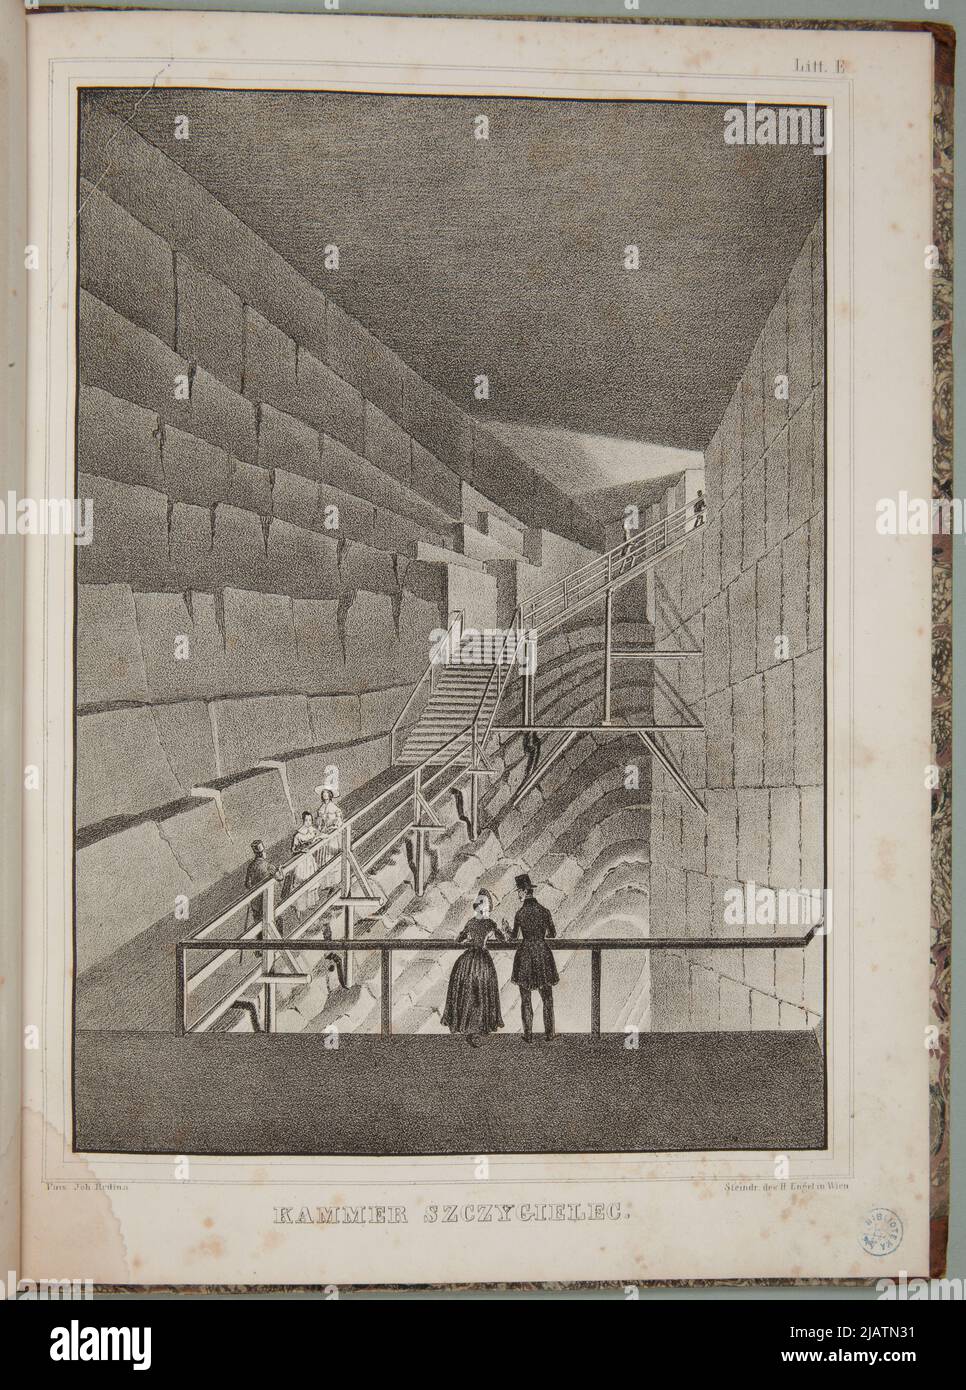 Plaque E, Szczygielec chamber in: Views of the salt dwarfs in Wieliczka [Vienna, Around 1850] Engel, H., Hero, Johann Nepomuk Stock Photo